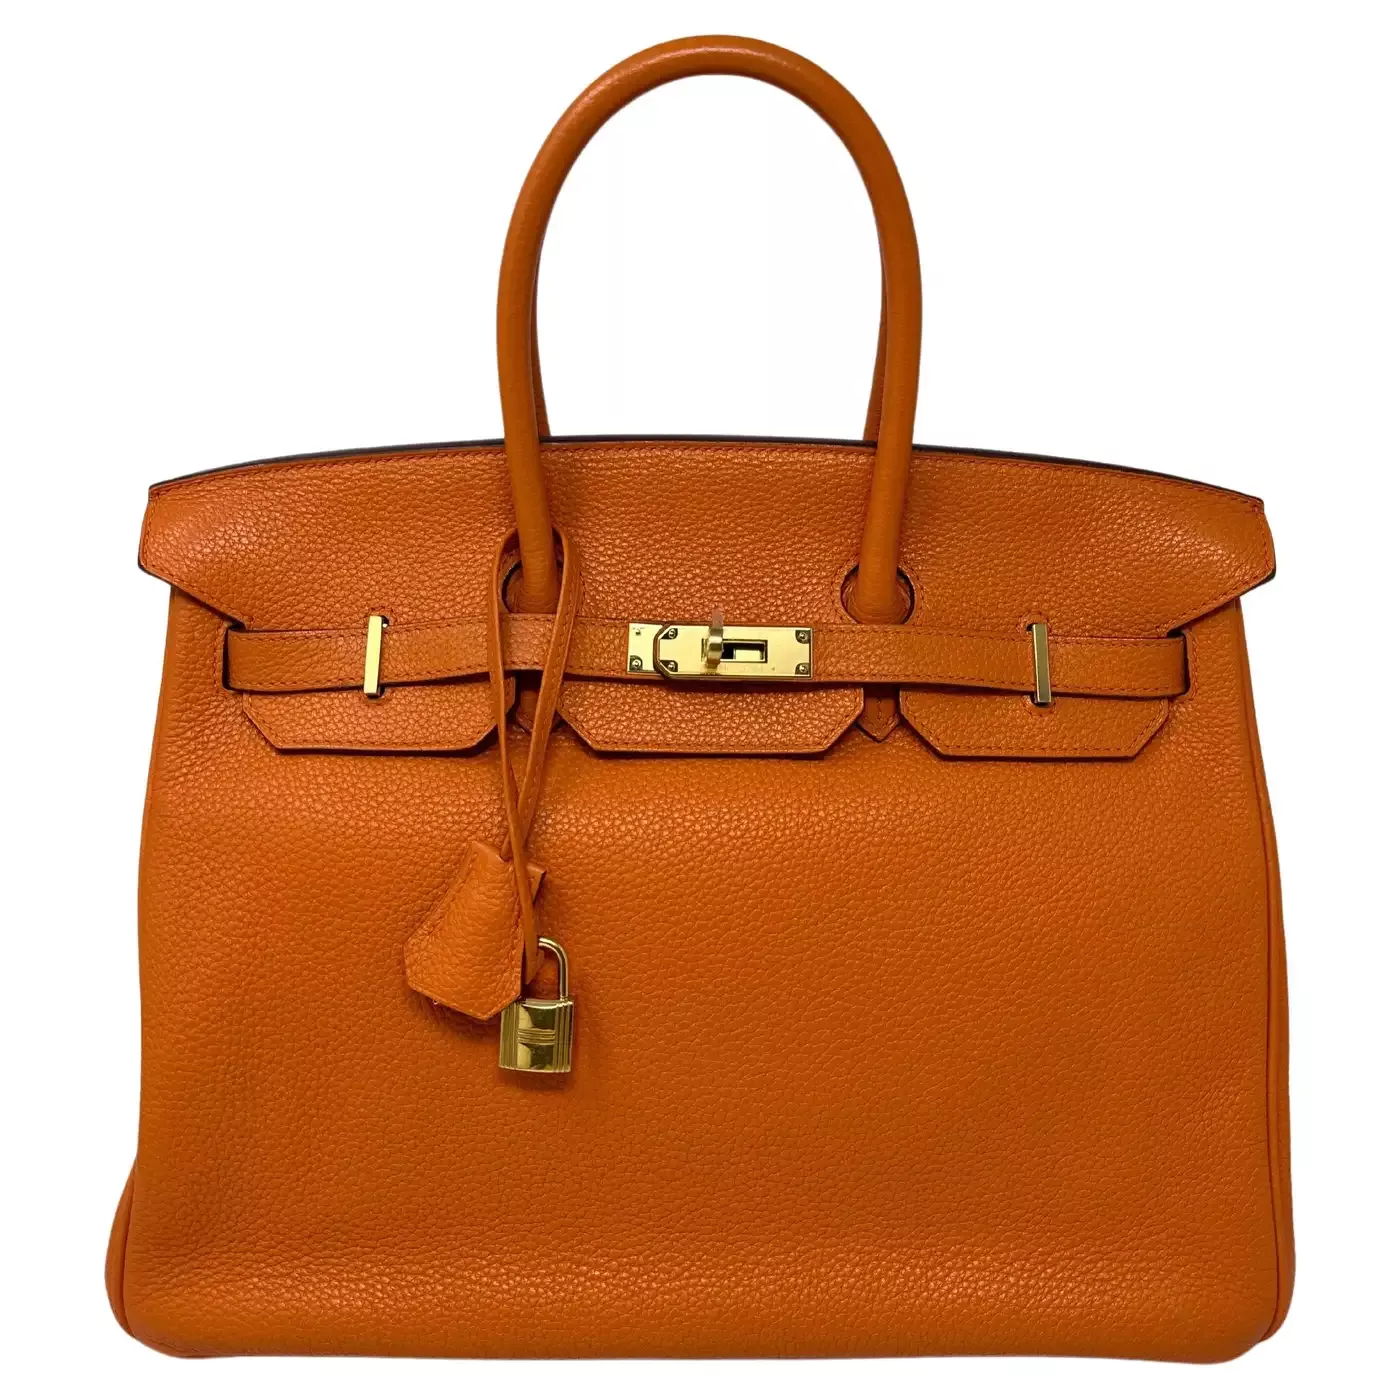 Hermes Orange Birkin 25 Bag curated on LTK